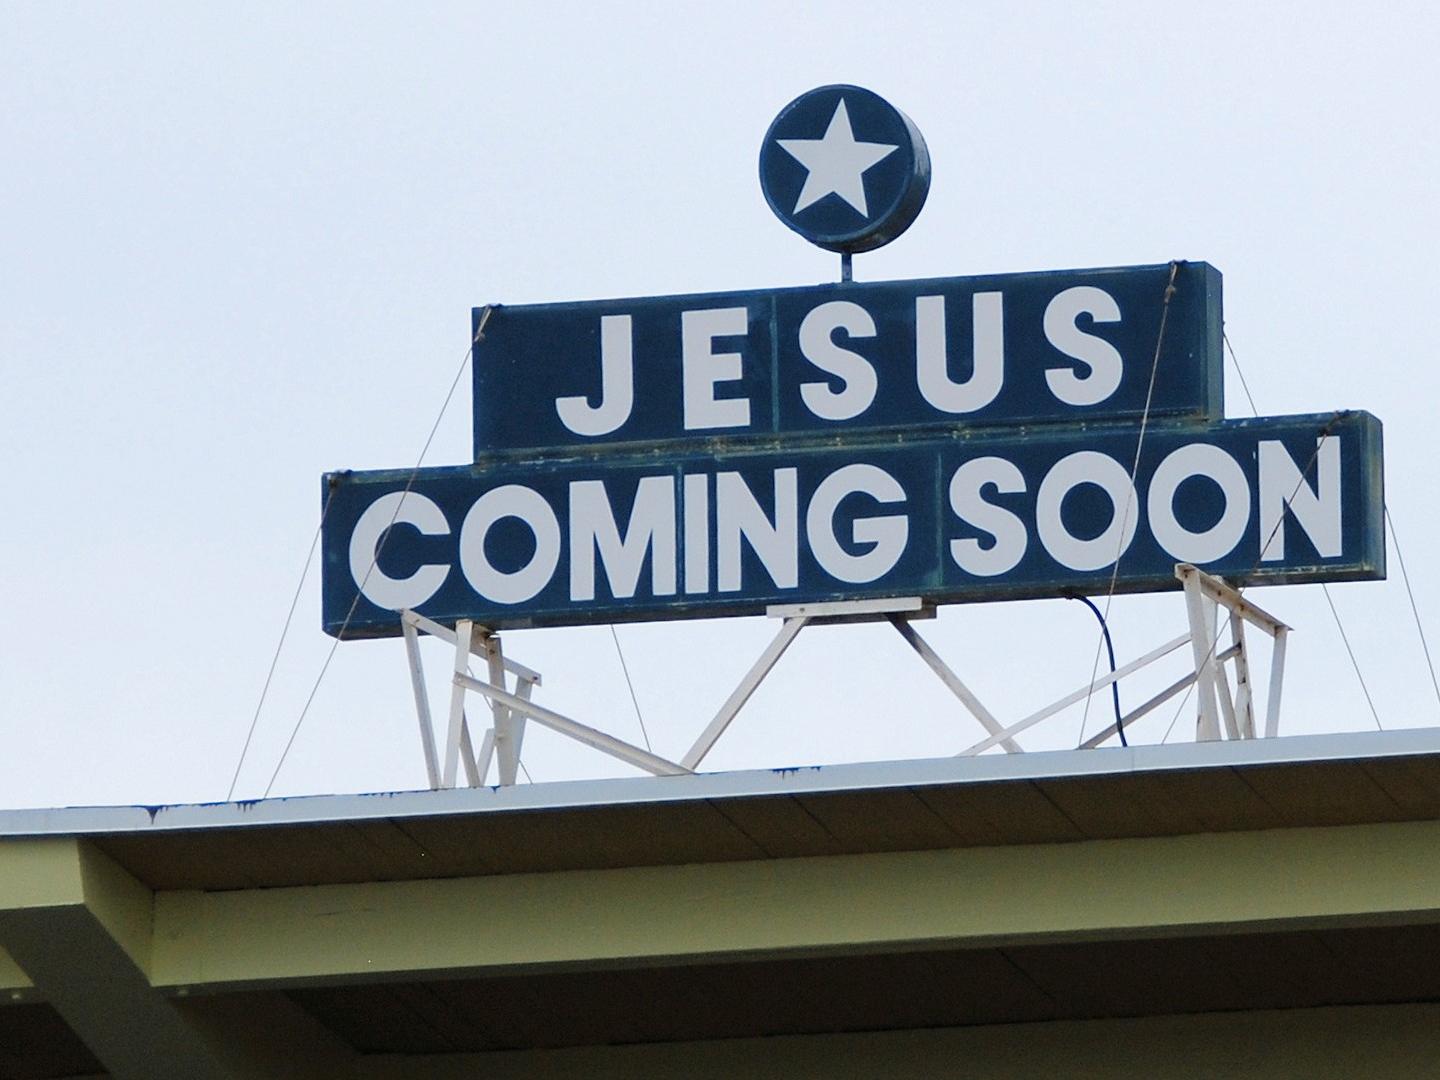 Jesus coming soon